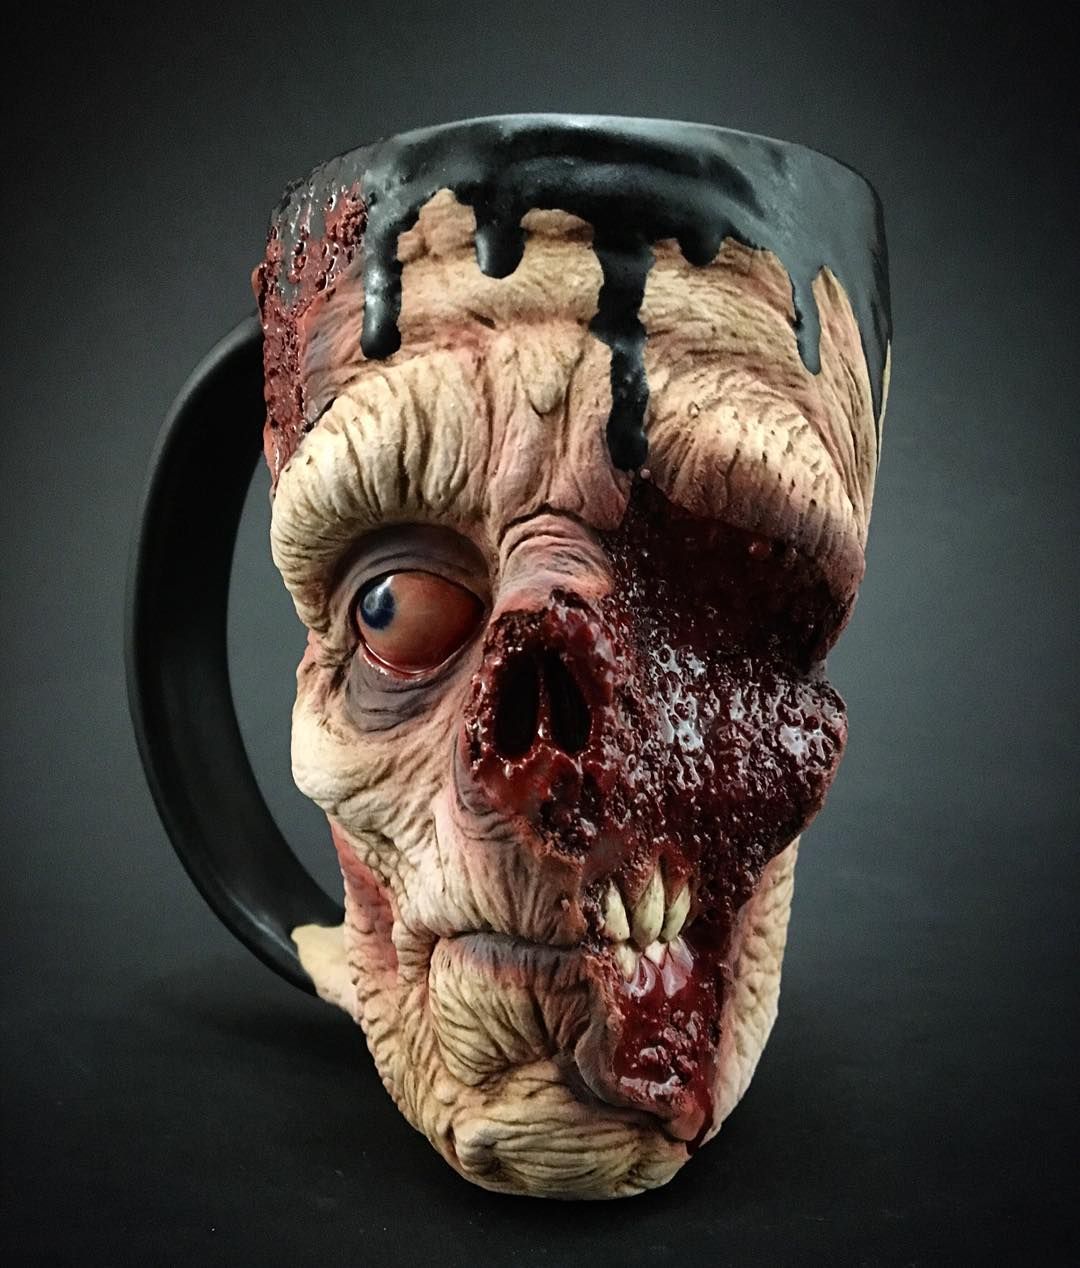 horreur-zombie-tasse-poterie-lente-joe-kevin-turquie-merck-2